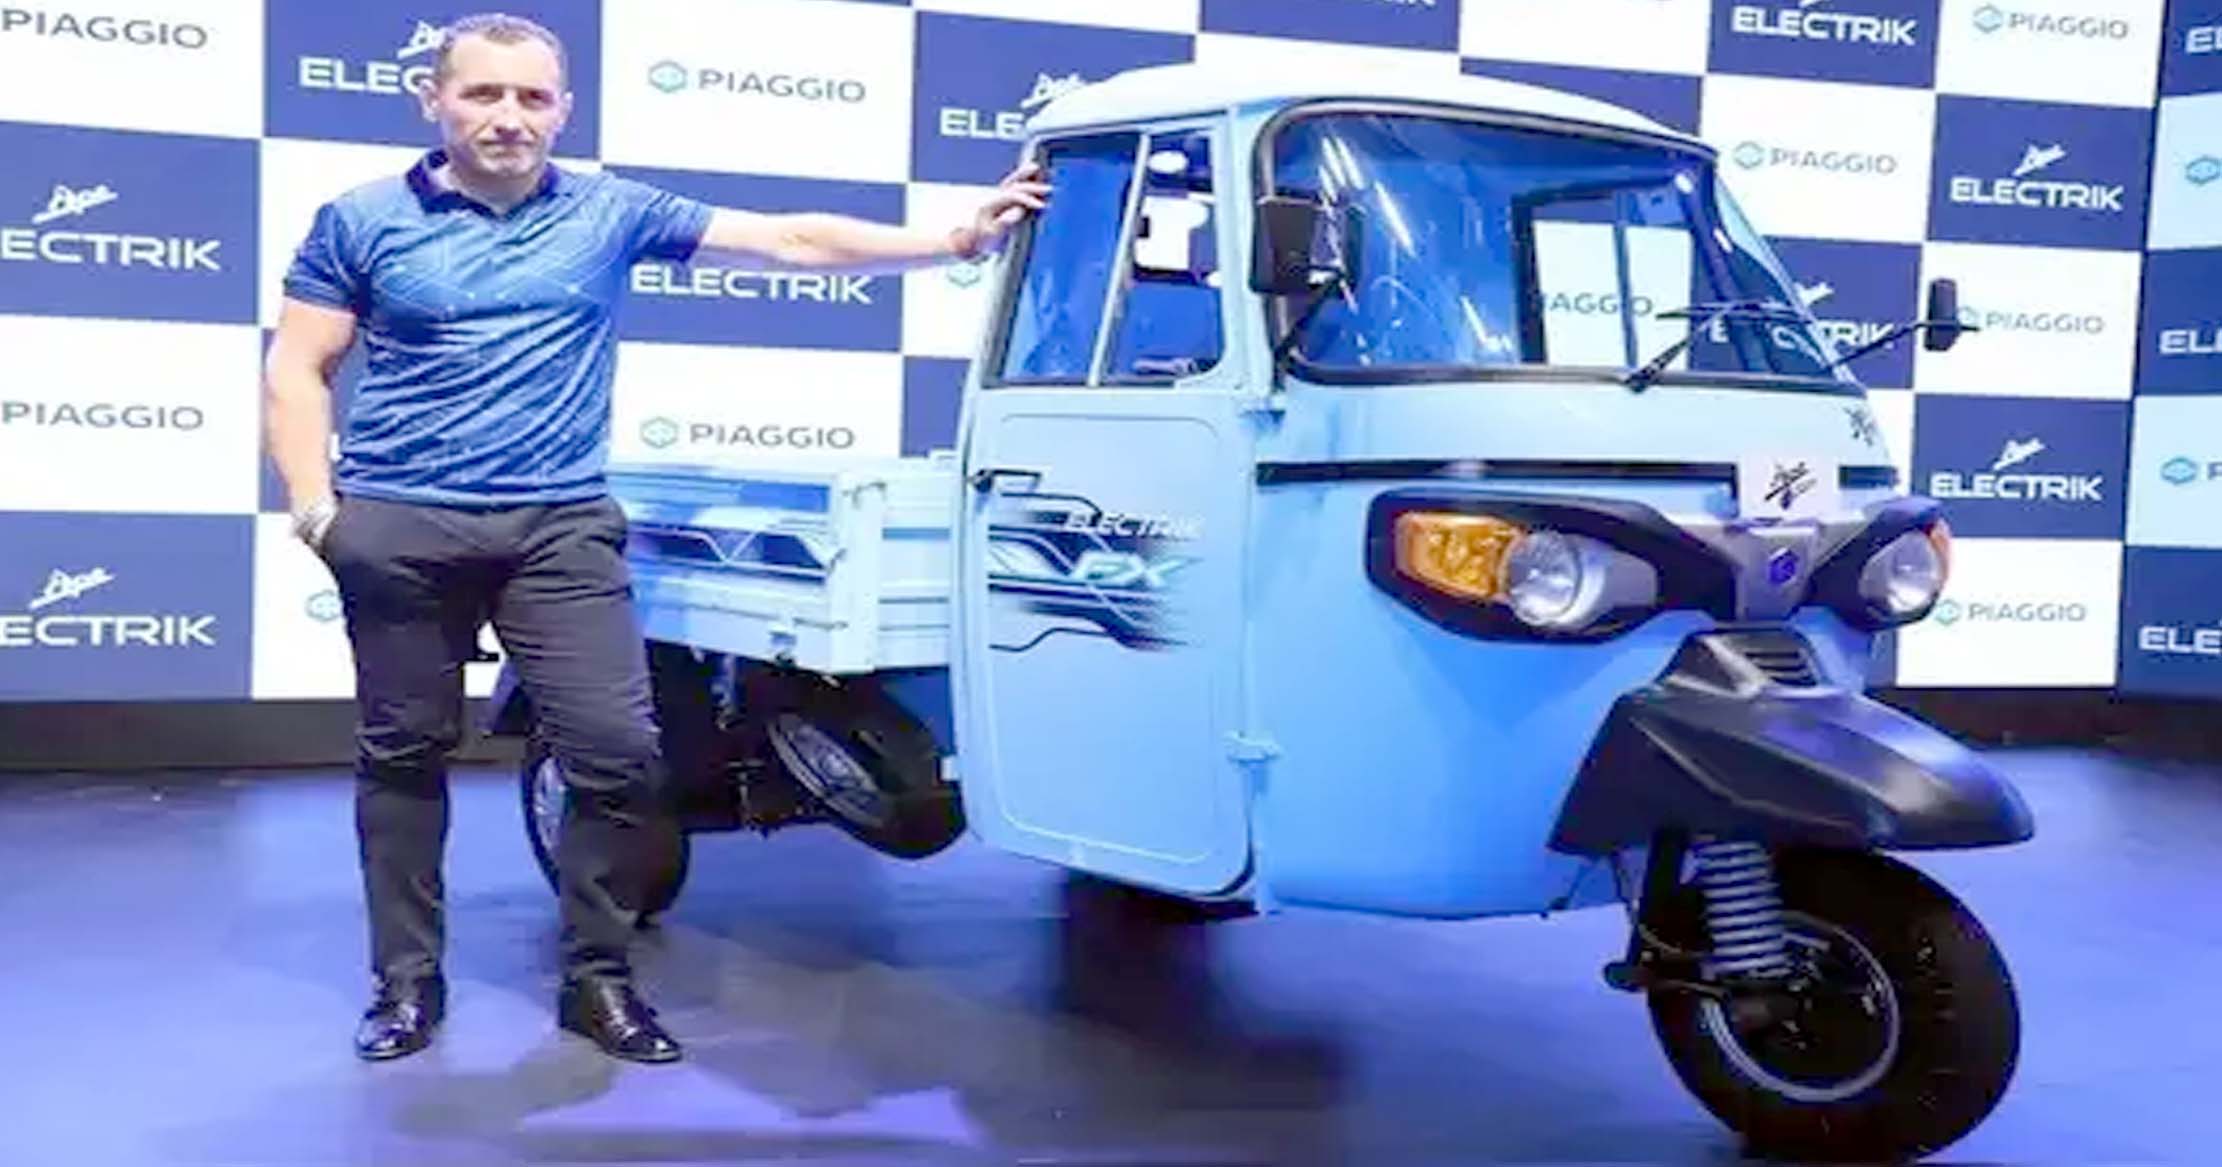 Piaggio ने भारत में लॉन्च किए दो नए इलेक्ट्रिक रिक्शा, सिंगल चार्ज पर 110 km तक सफर